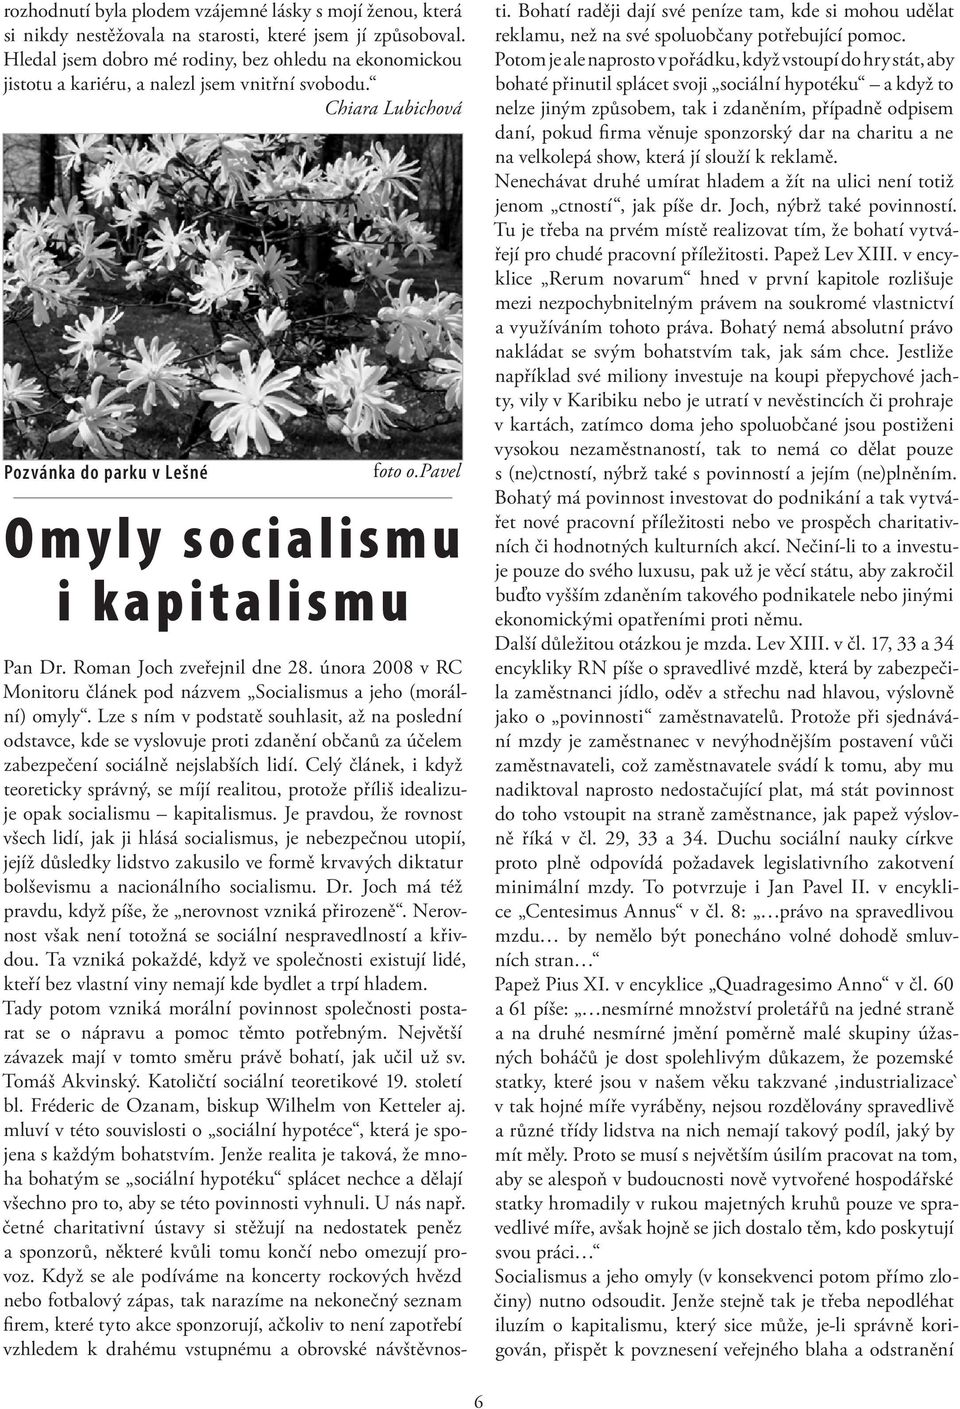 pavel O m y l y s o c i a l i s m u i kapitali smu Pan Dr. Roman Joch zveřejnil dne 28. února 2008 v RC Monitoru článek pod názvem Socialismus a jeho (morální) omyly.